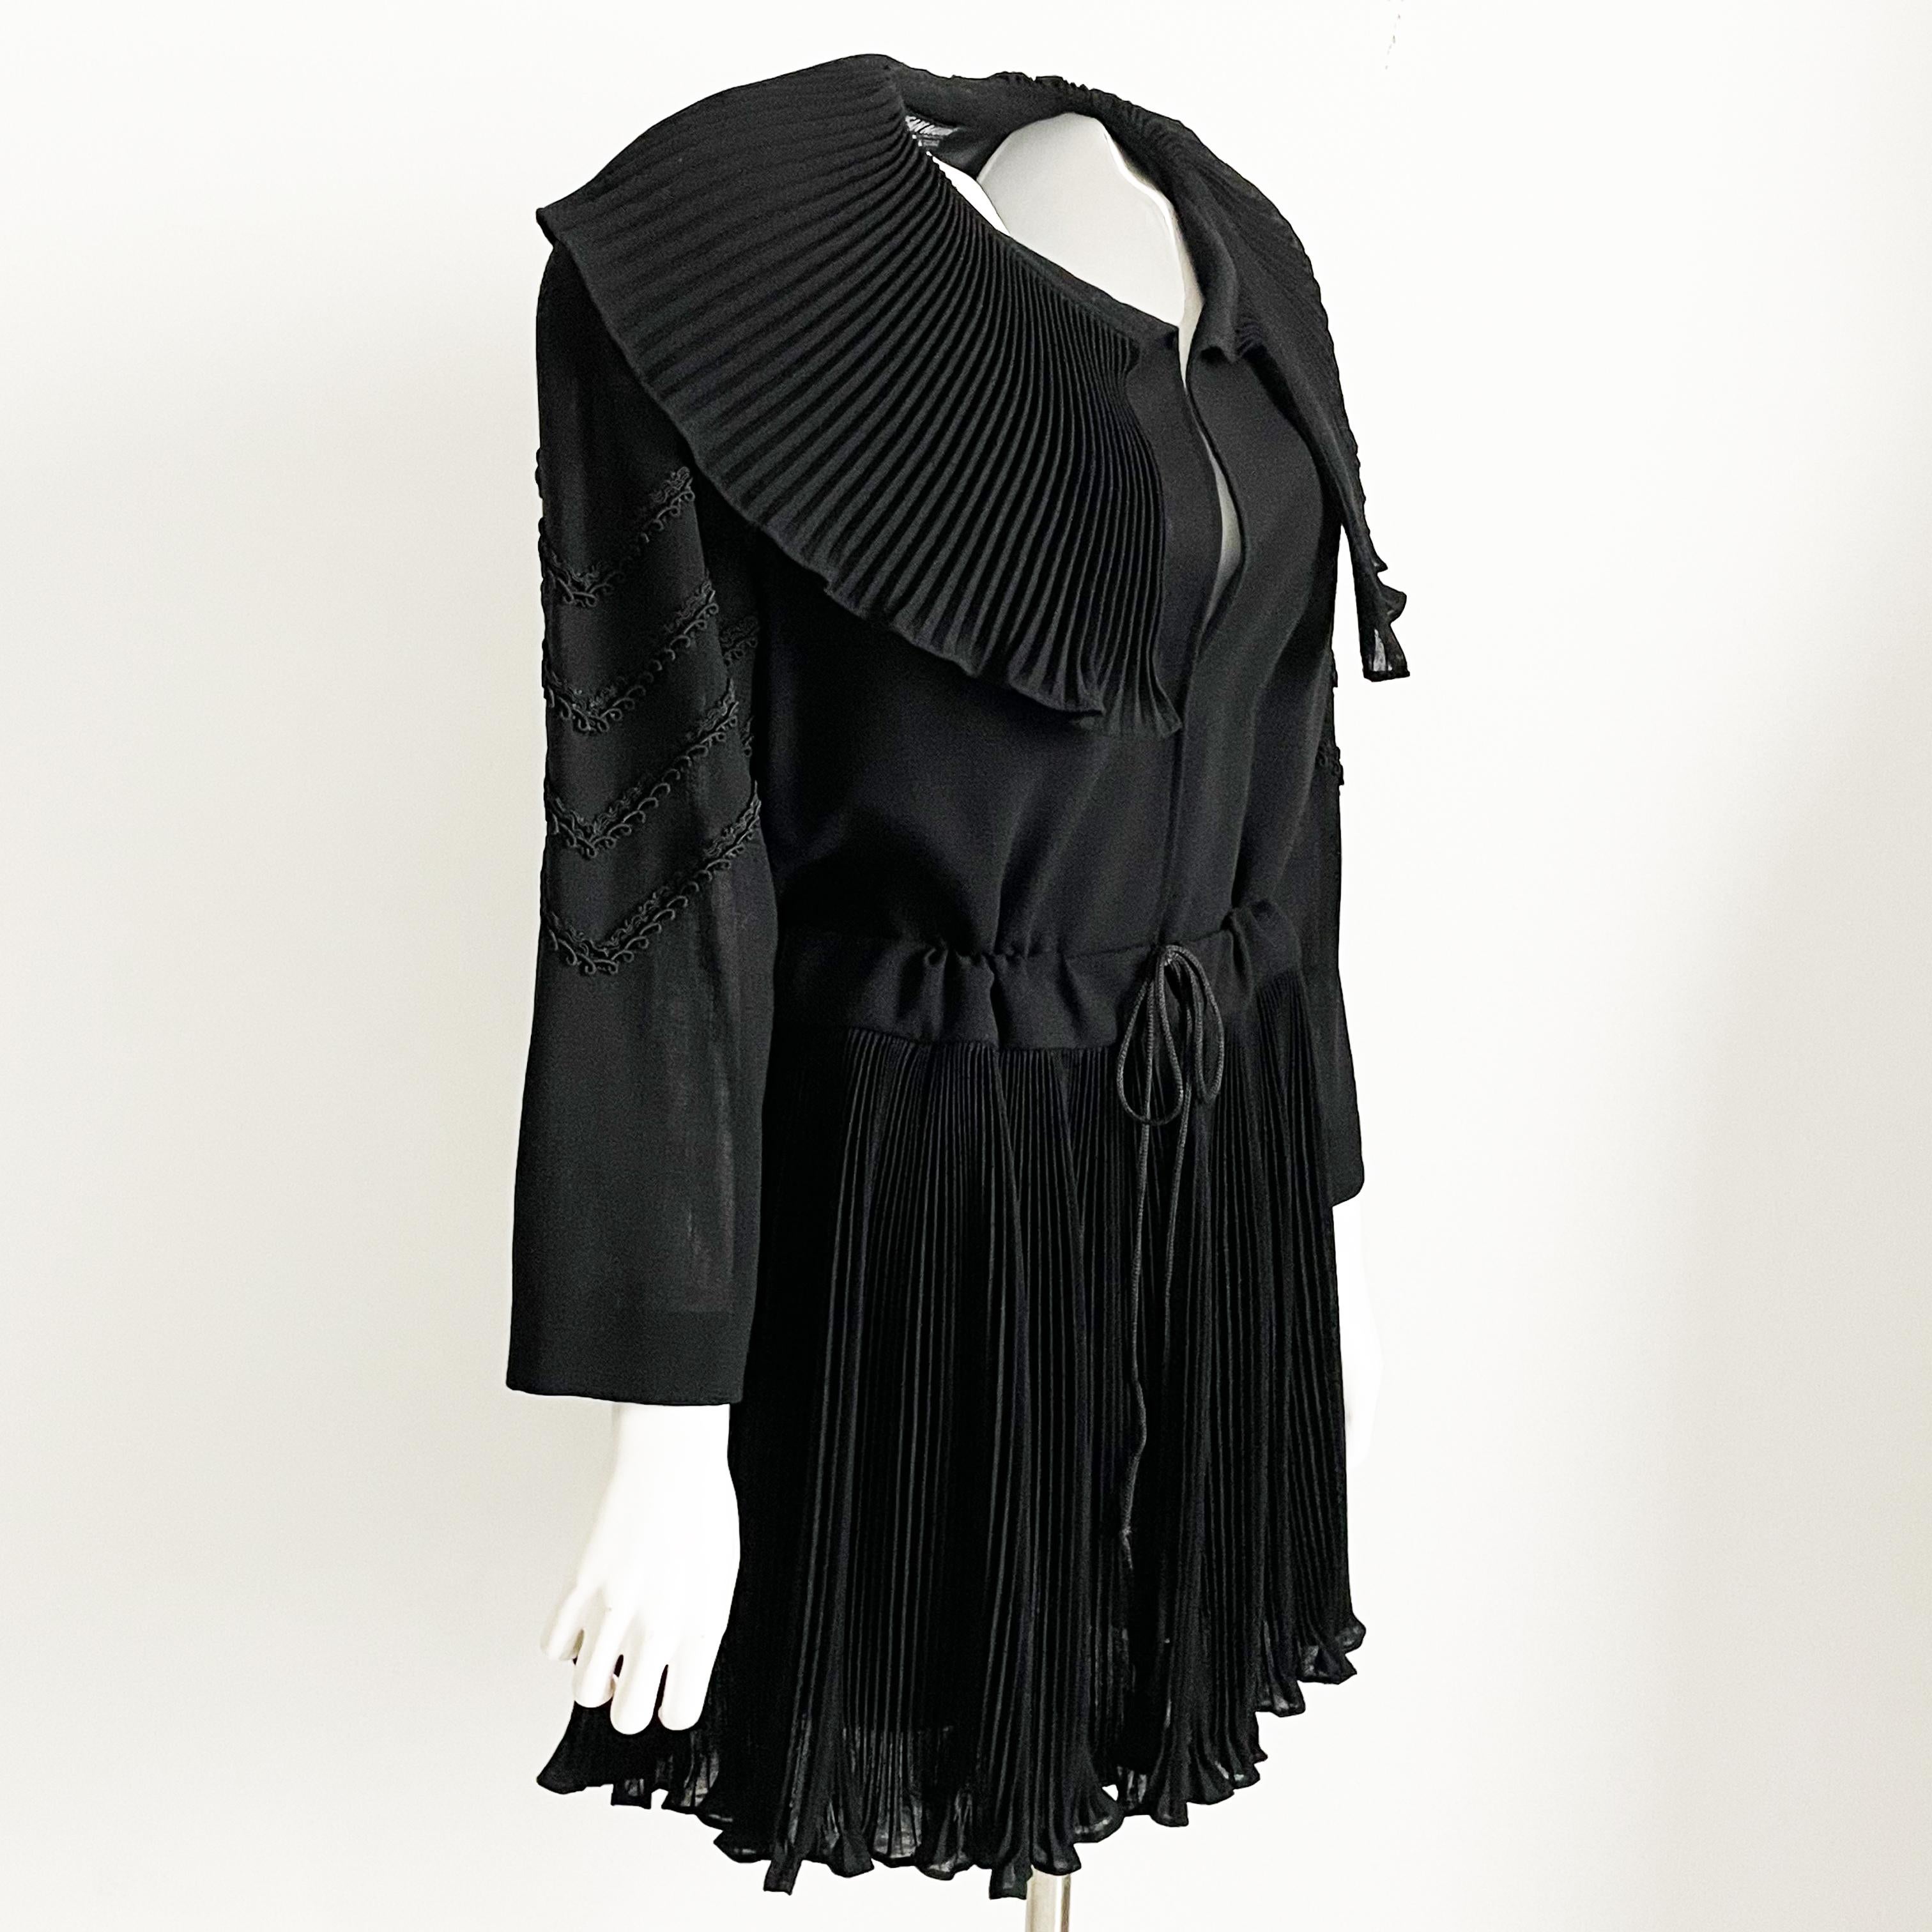 Authentische, gebrauchte, schwarze Vintage-Jean-Muir-Wolljacke mit Mikro-Faltenkragen, wahrscheinlich aus den 80er Jahren. Es ist romantisch und raffiniert und hat einen Kragen und einen Saum mit Mikrofalten sowie Soutache-Details an den